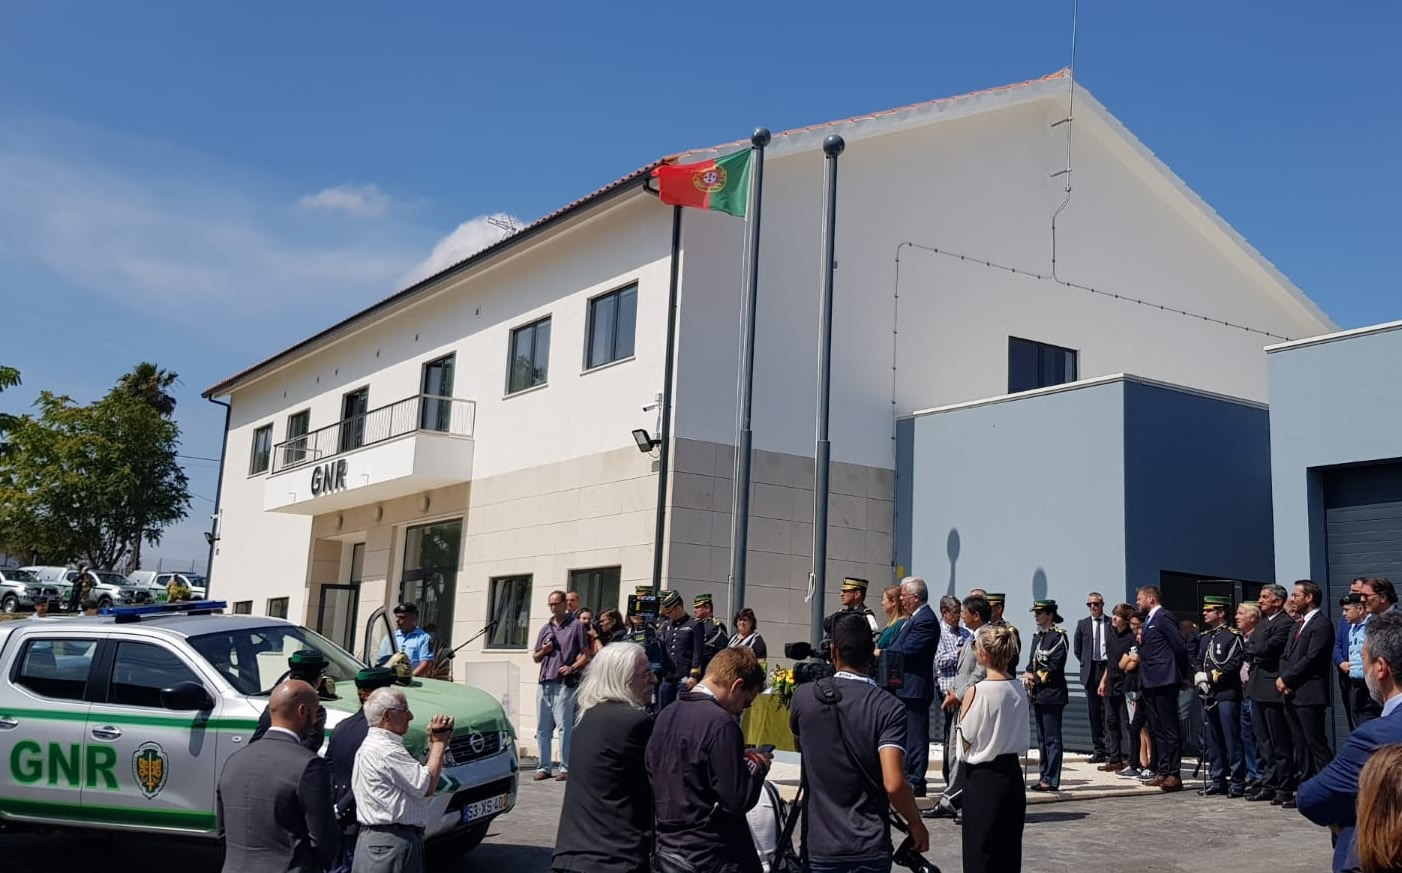 Inauguration du nouveau siège de GNR de Alcanena